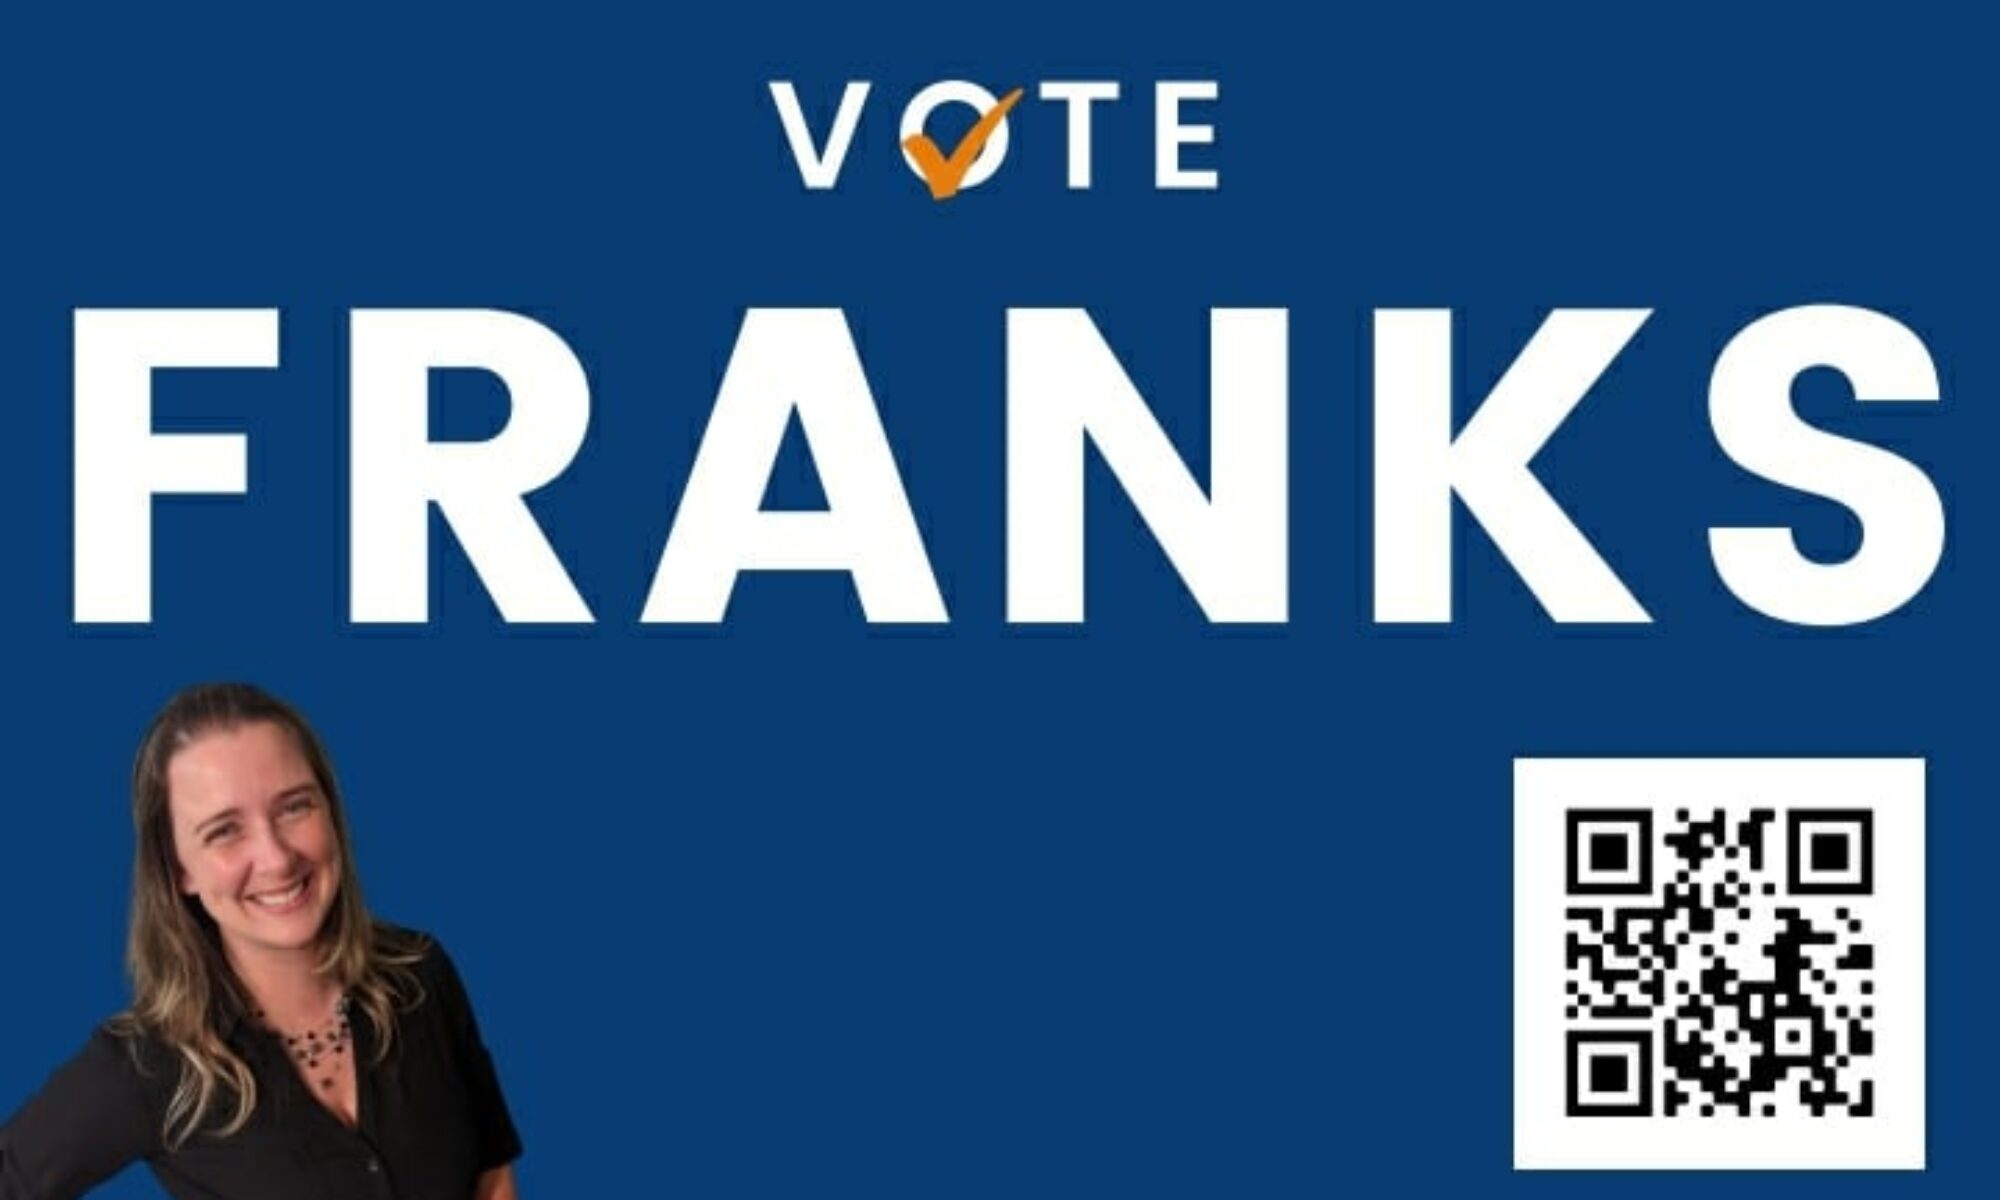 Vote Franks